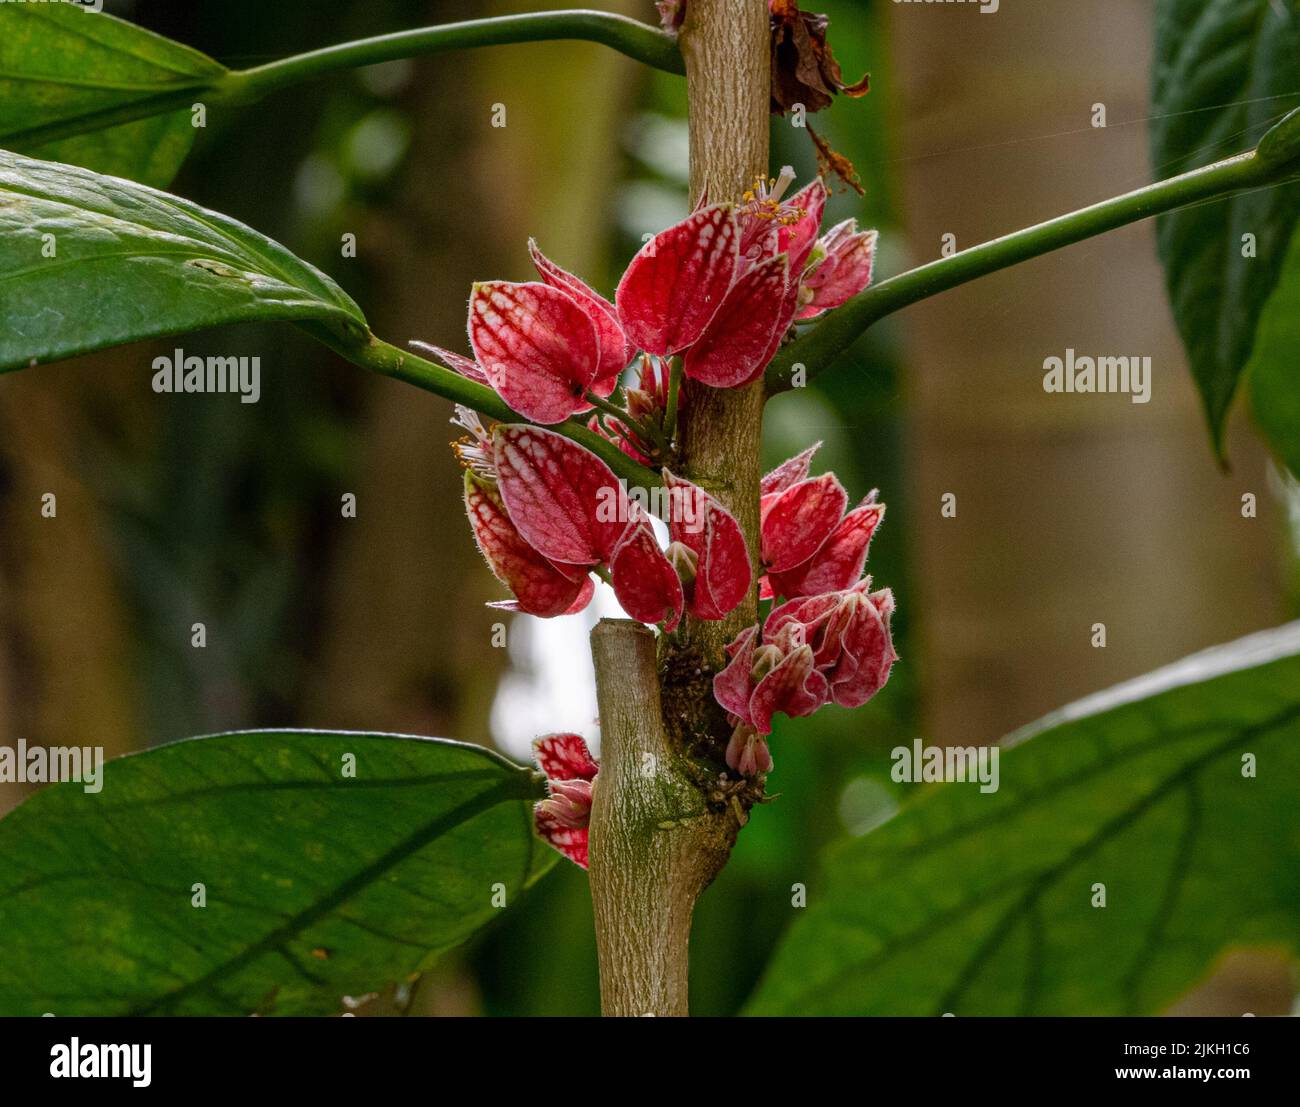 Goethea strictiflora o Pavonia strictiflora es un arbusto nativo de Brasil. Detalle de flores. Foto de stock